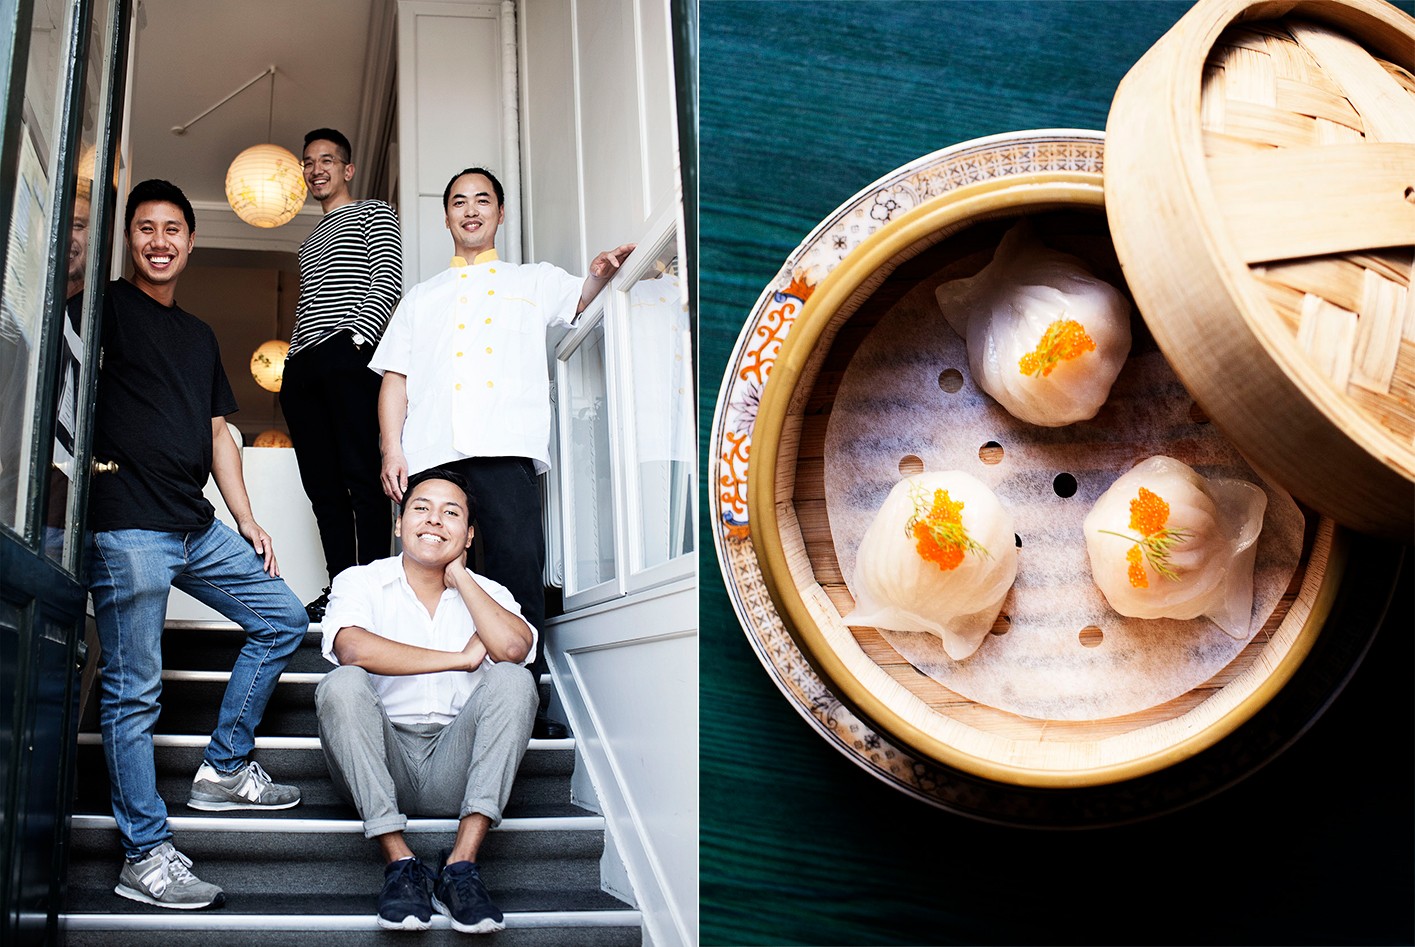 Den her kinesiske restaurant København gør oprør mod friture og buffet